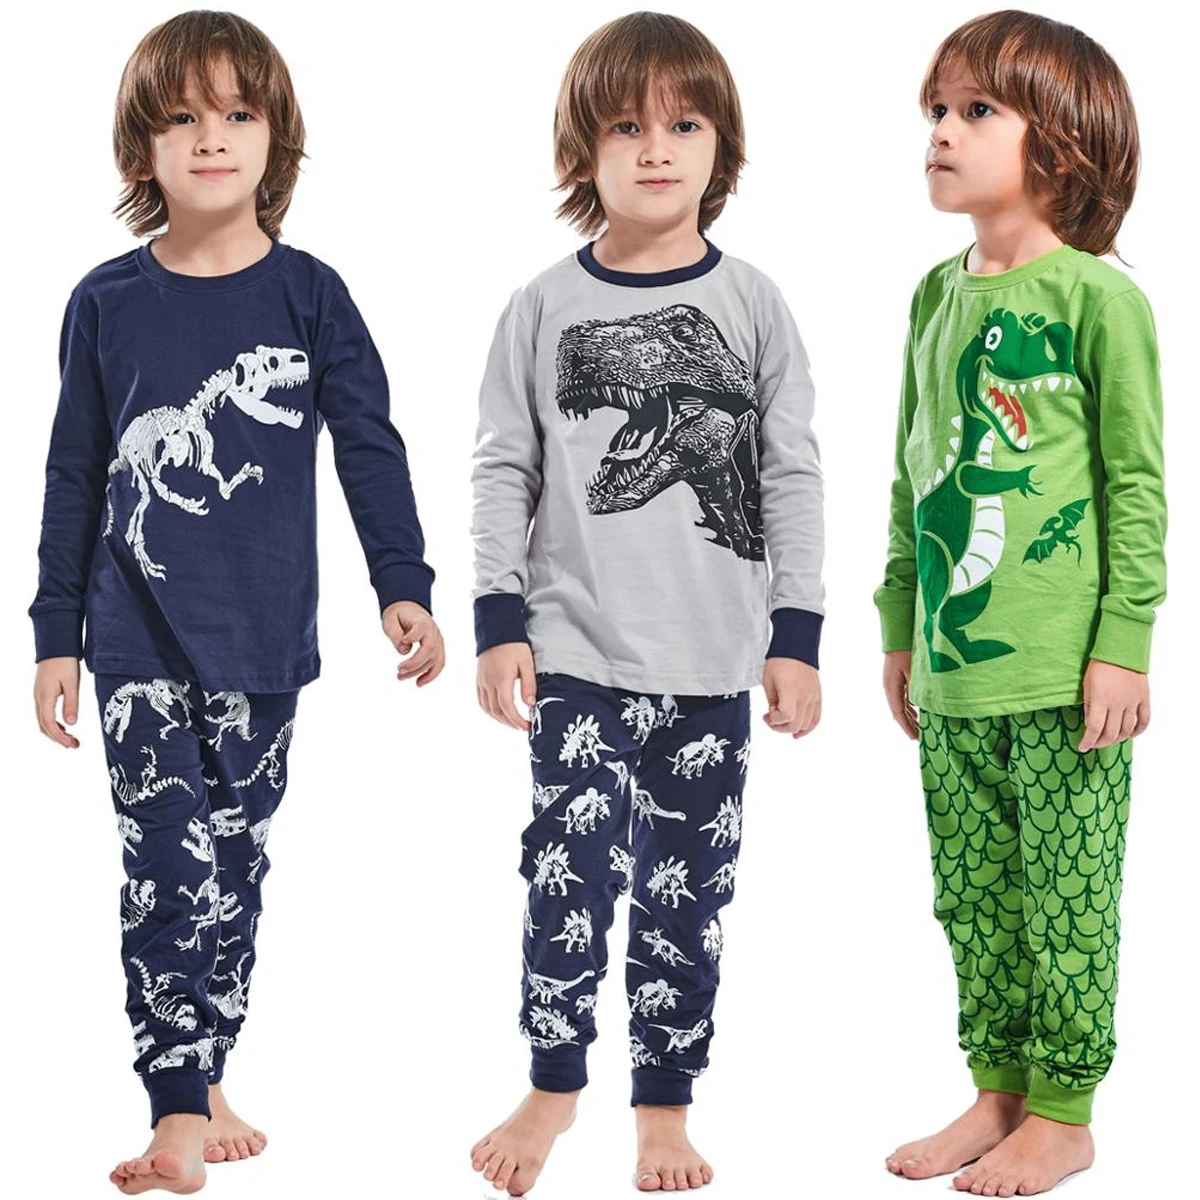 

Boys Dinosaur Pyjamas Kids T-Rex Pajamas Child Tyrannosaurus Pijamas Cotton Pjs Long Sleeve Sleepwear 2pcs Sets